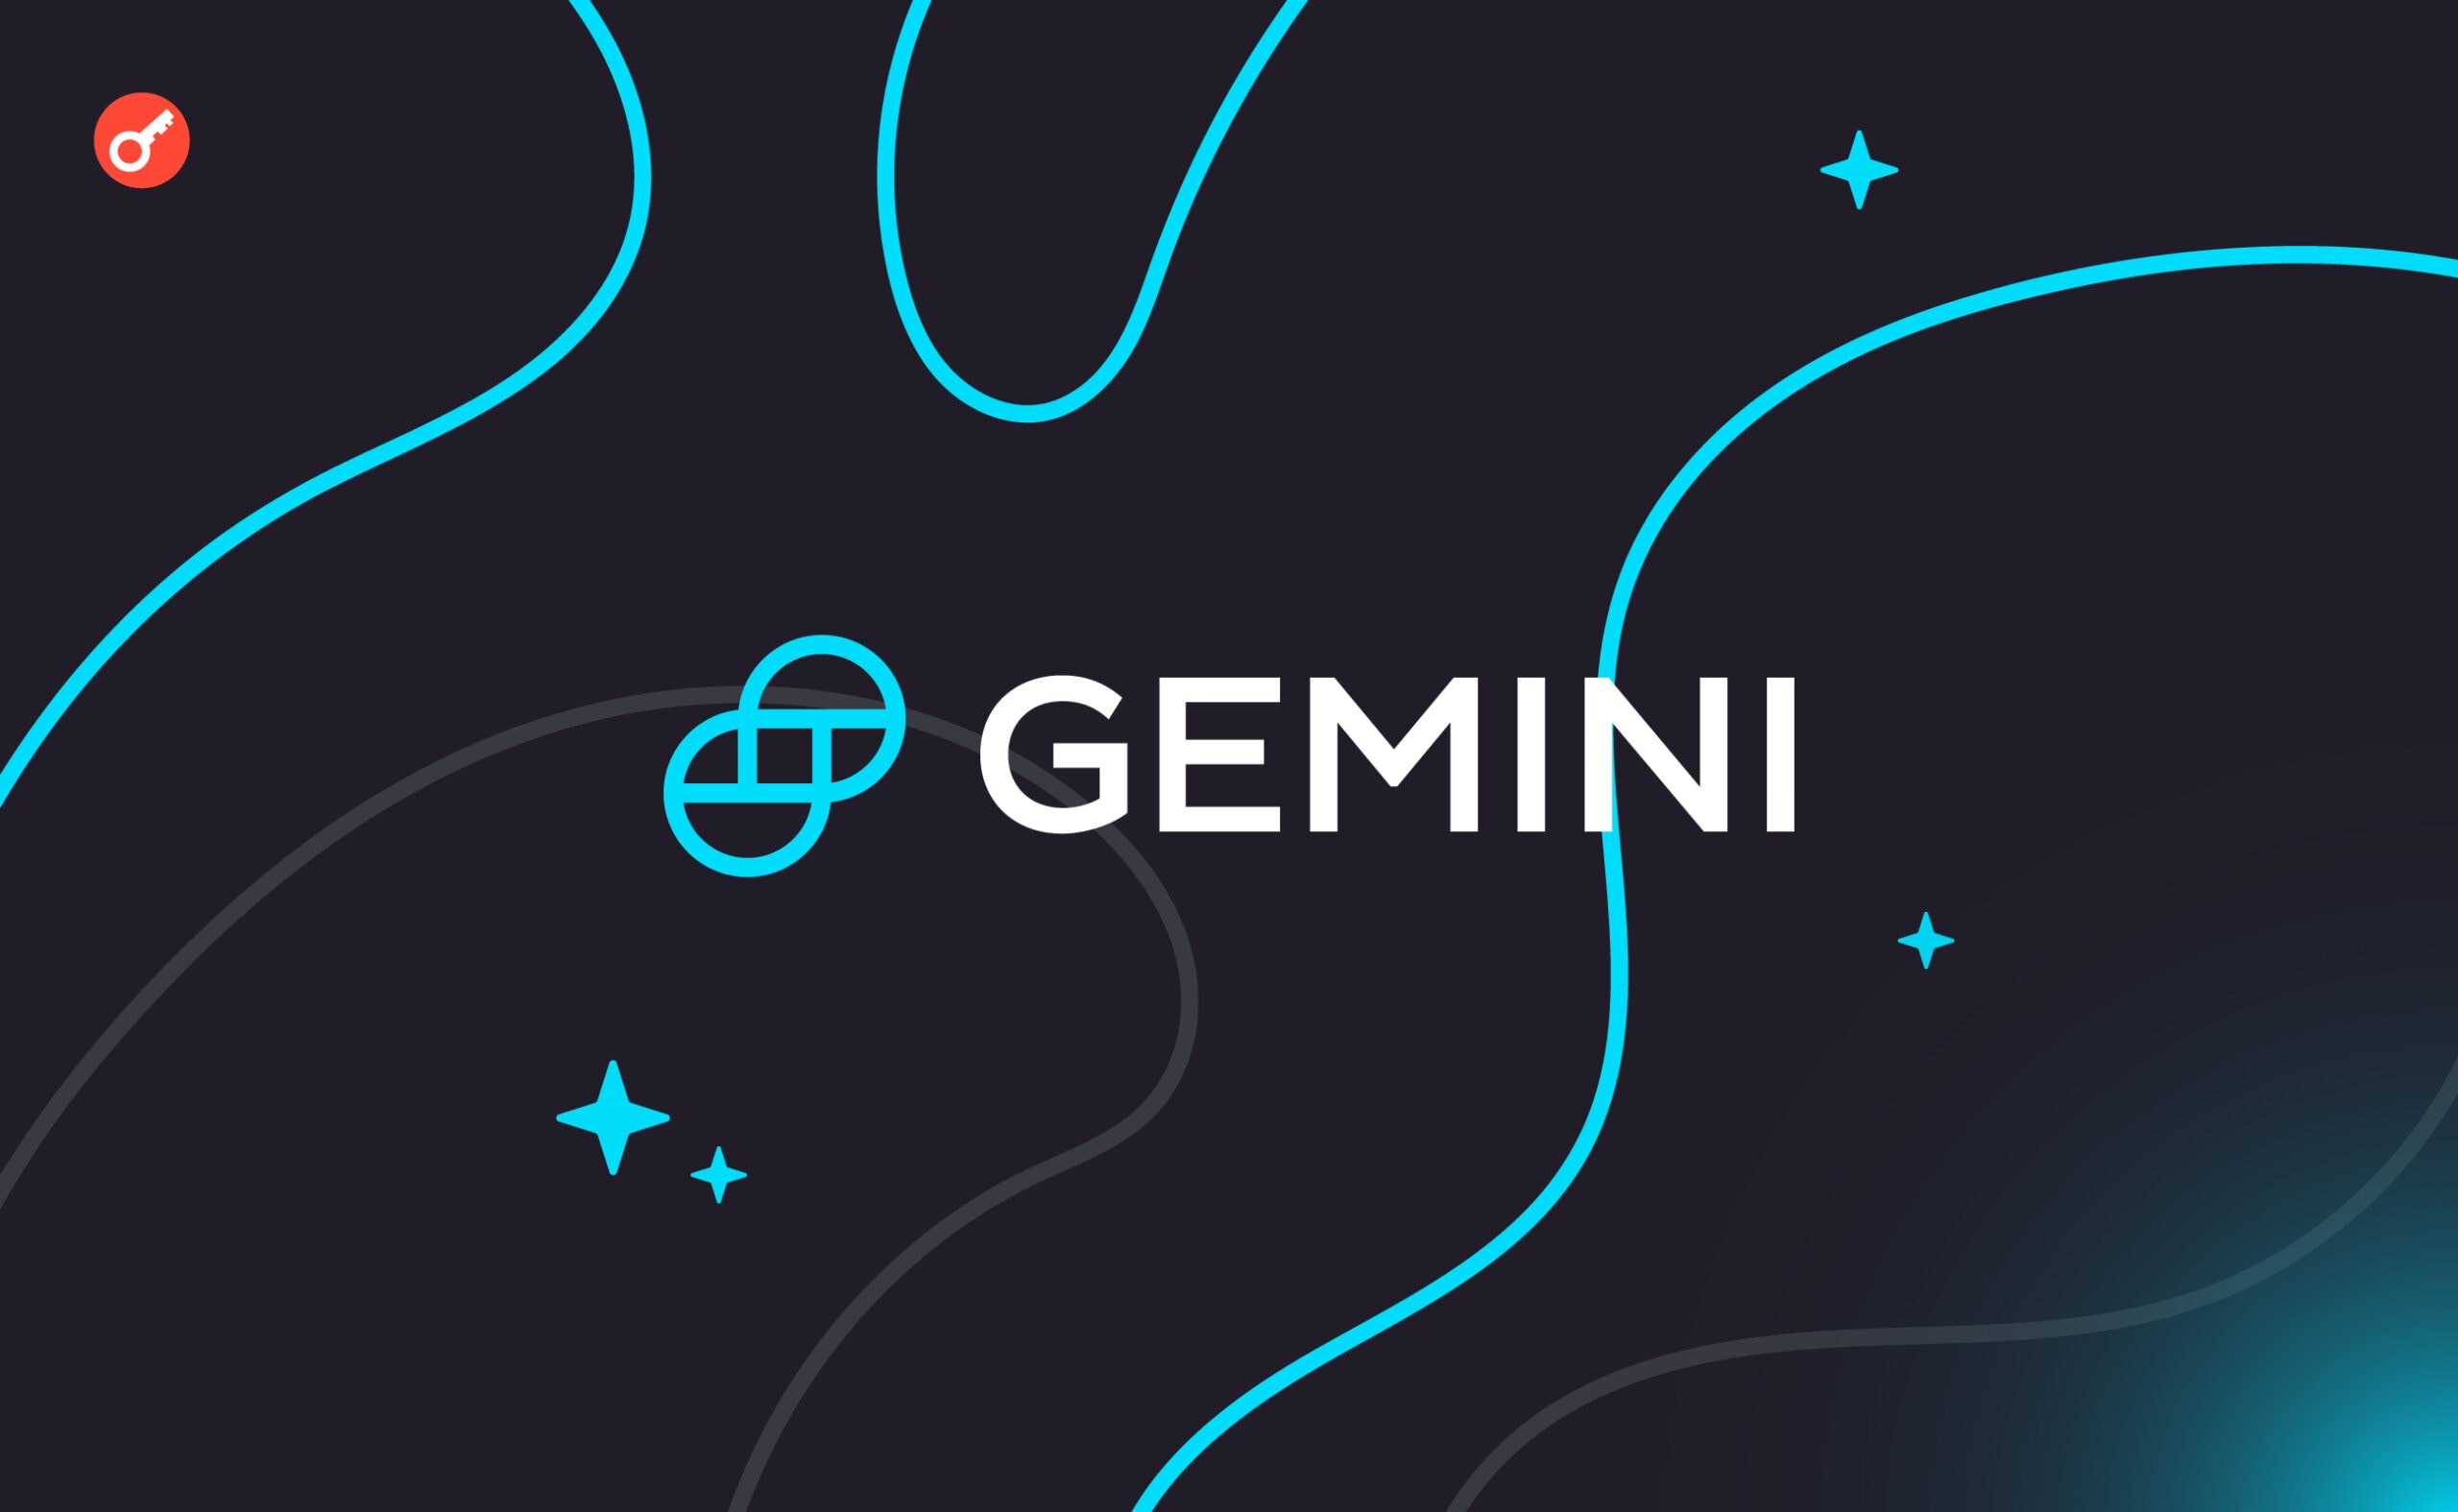 Gemini получила лицензию поставщика услуг виртуальных активов во Франции. Заглавный коллаж новости.